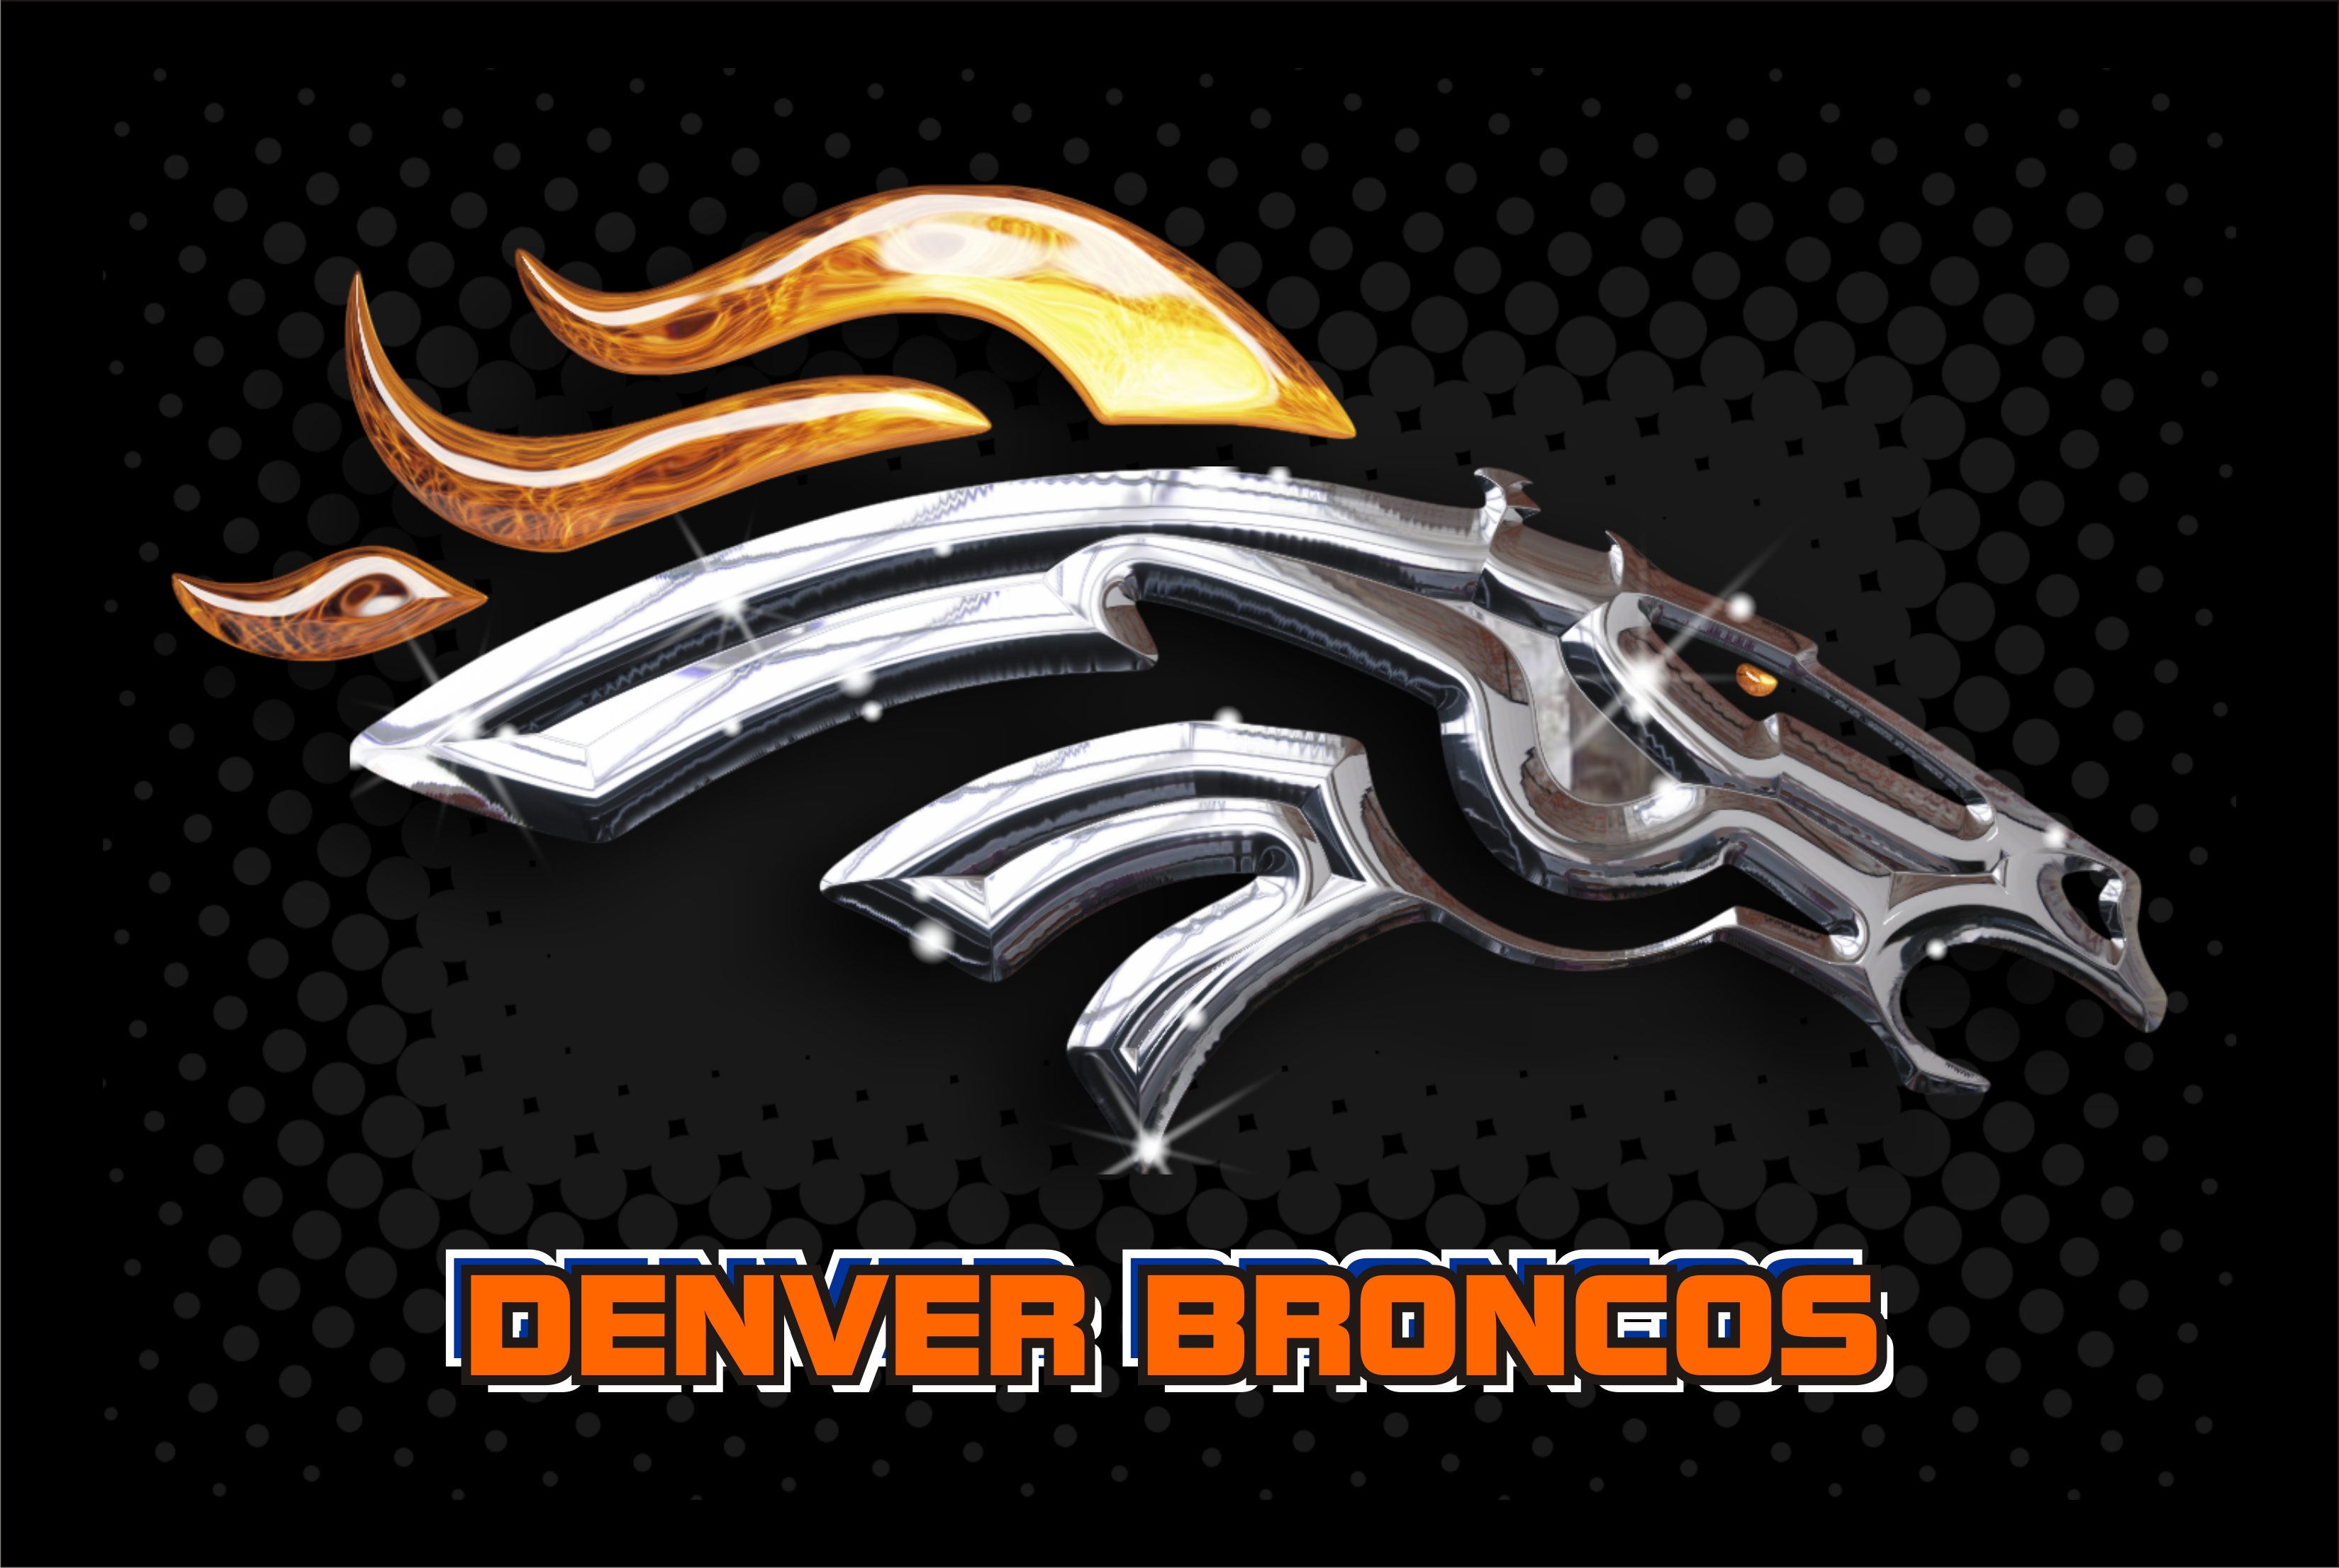 Denver Broncos Logo Wallpaper 2013 images